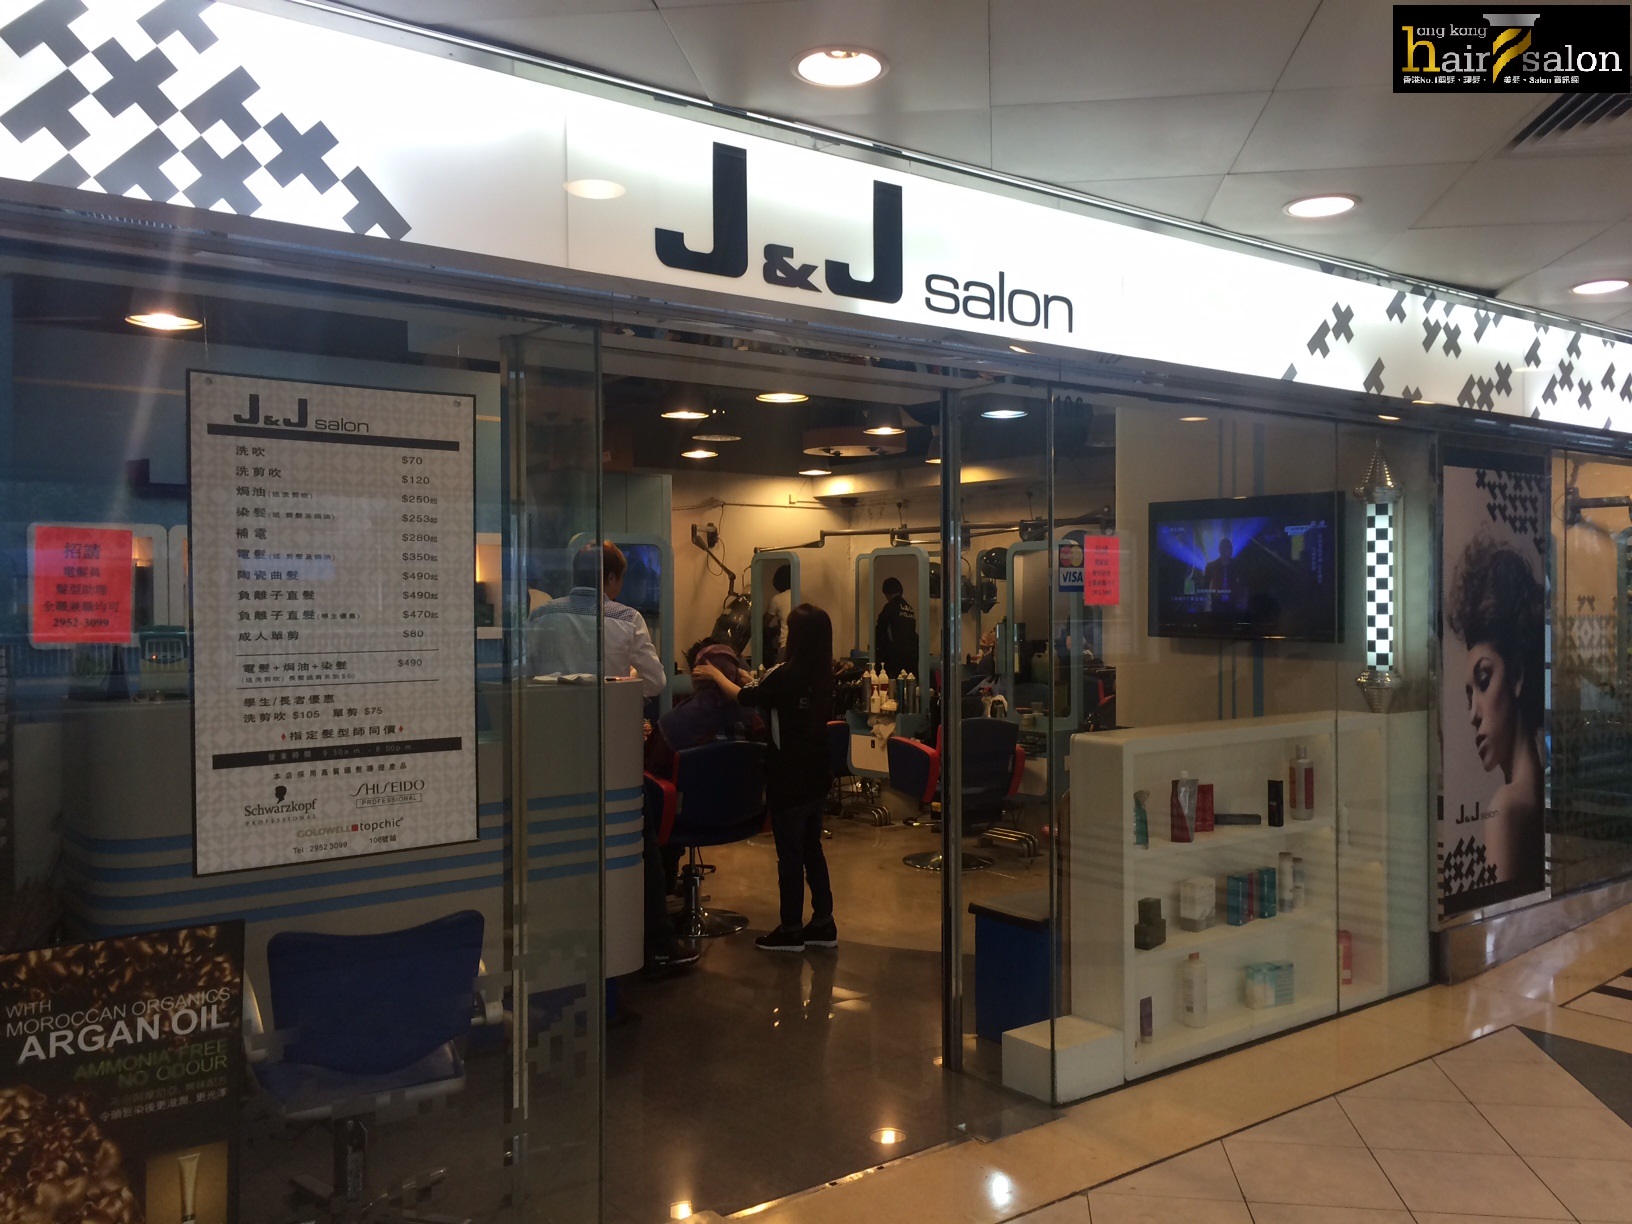 香港美髮網 HK Hair Salon 髮型屋Salon / 髮型師: J&J SALON